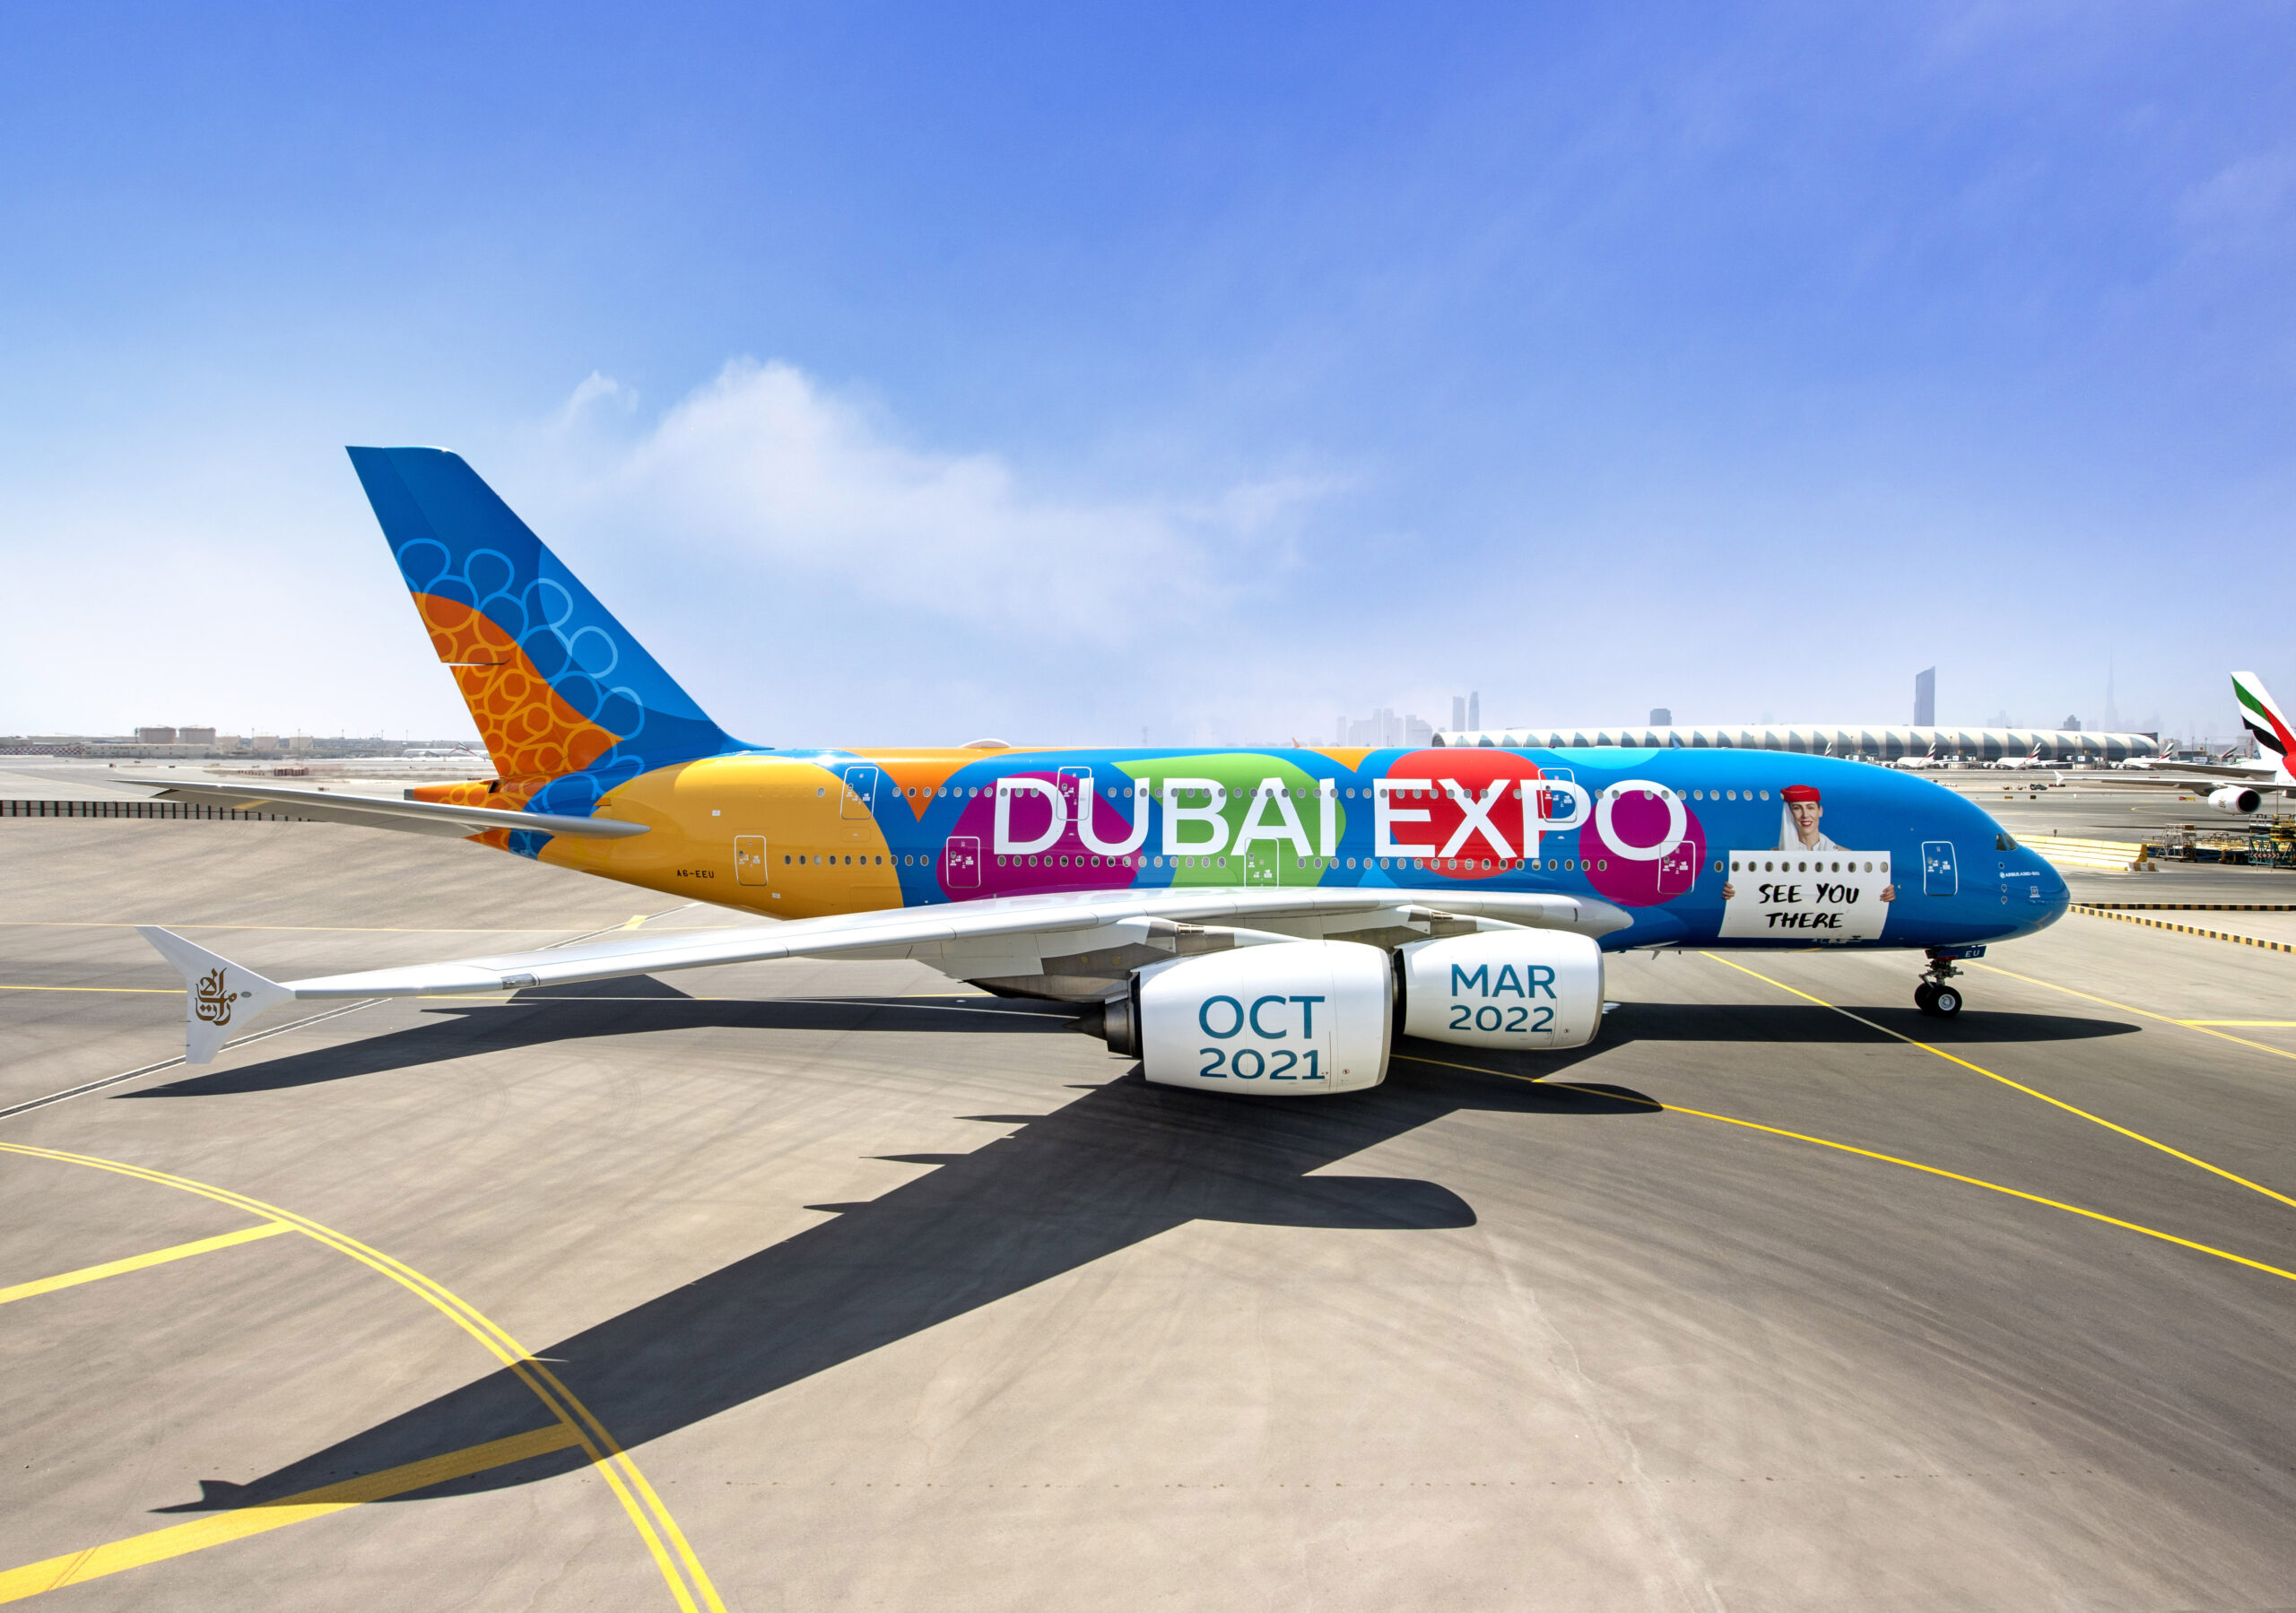 Emirates Reveals Special Expo 2020 Dubai Livery on A380